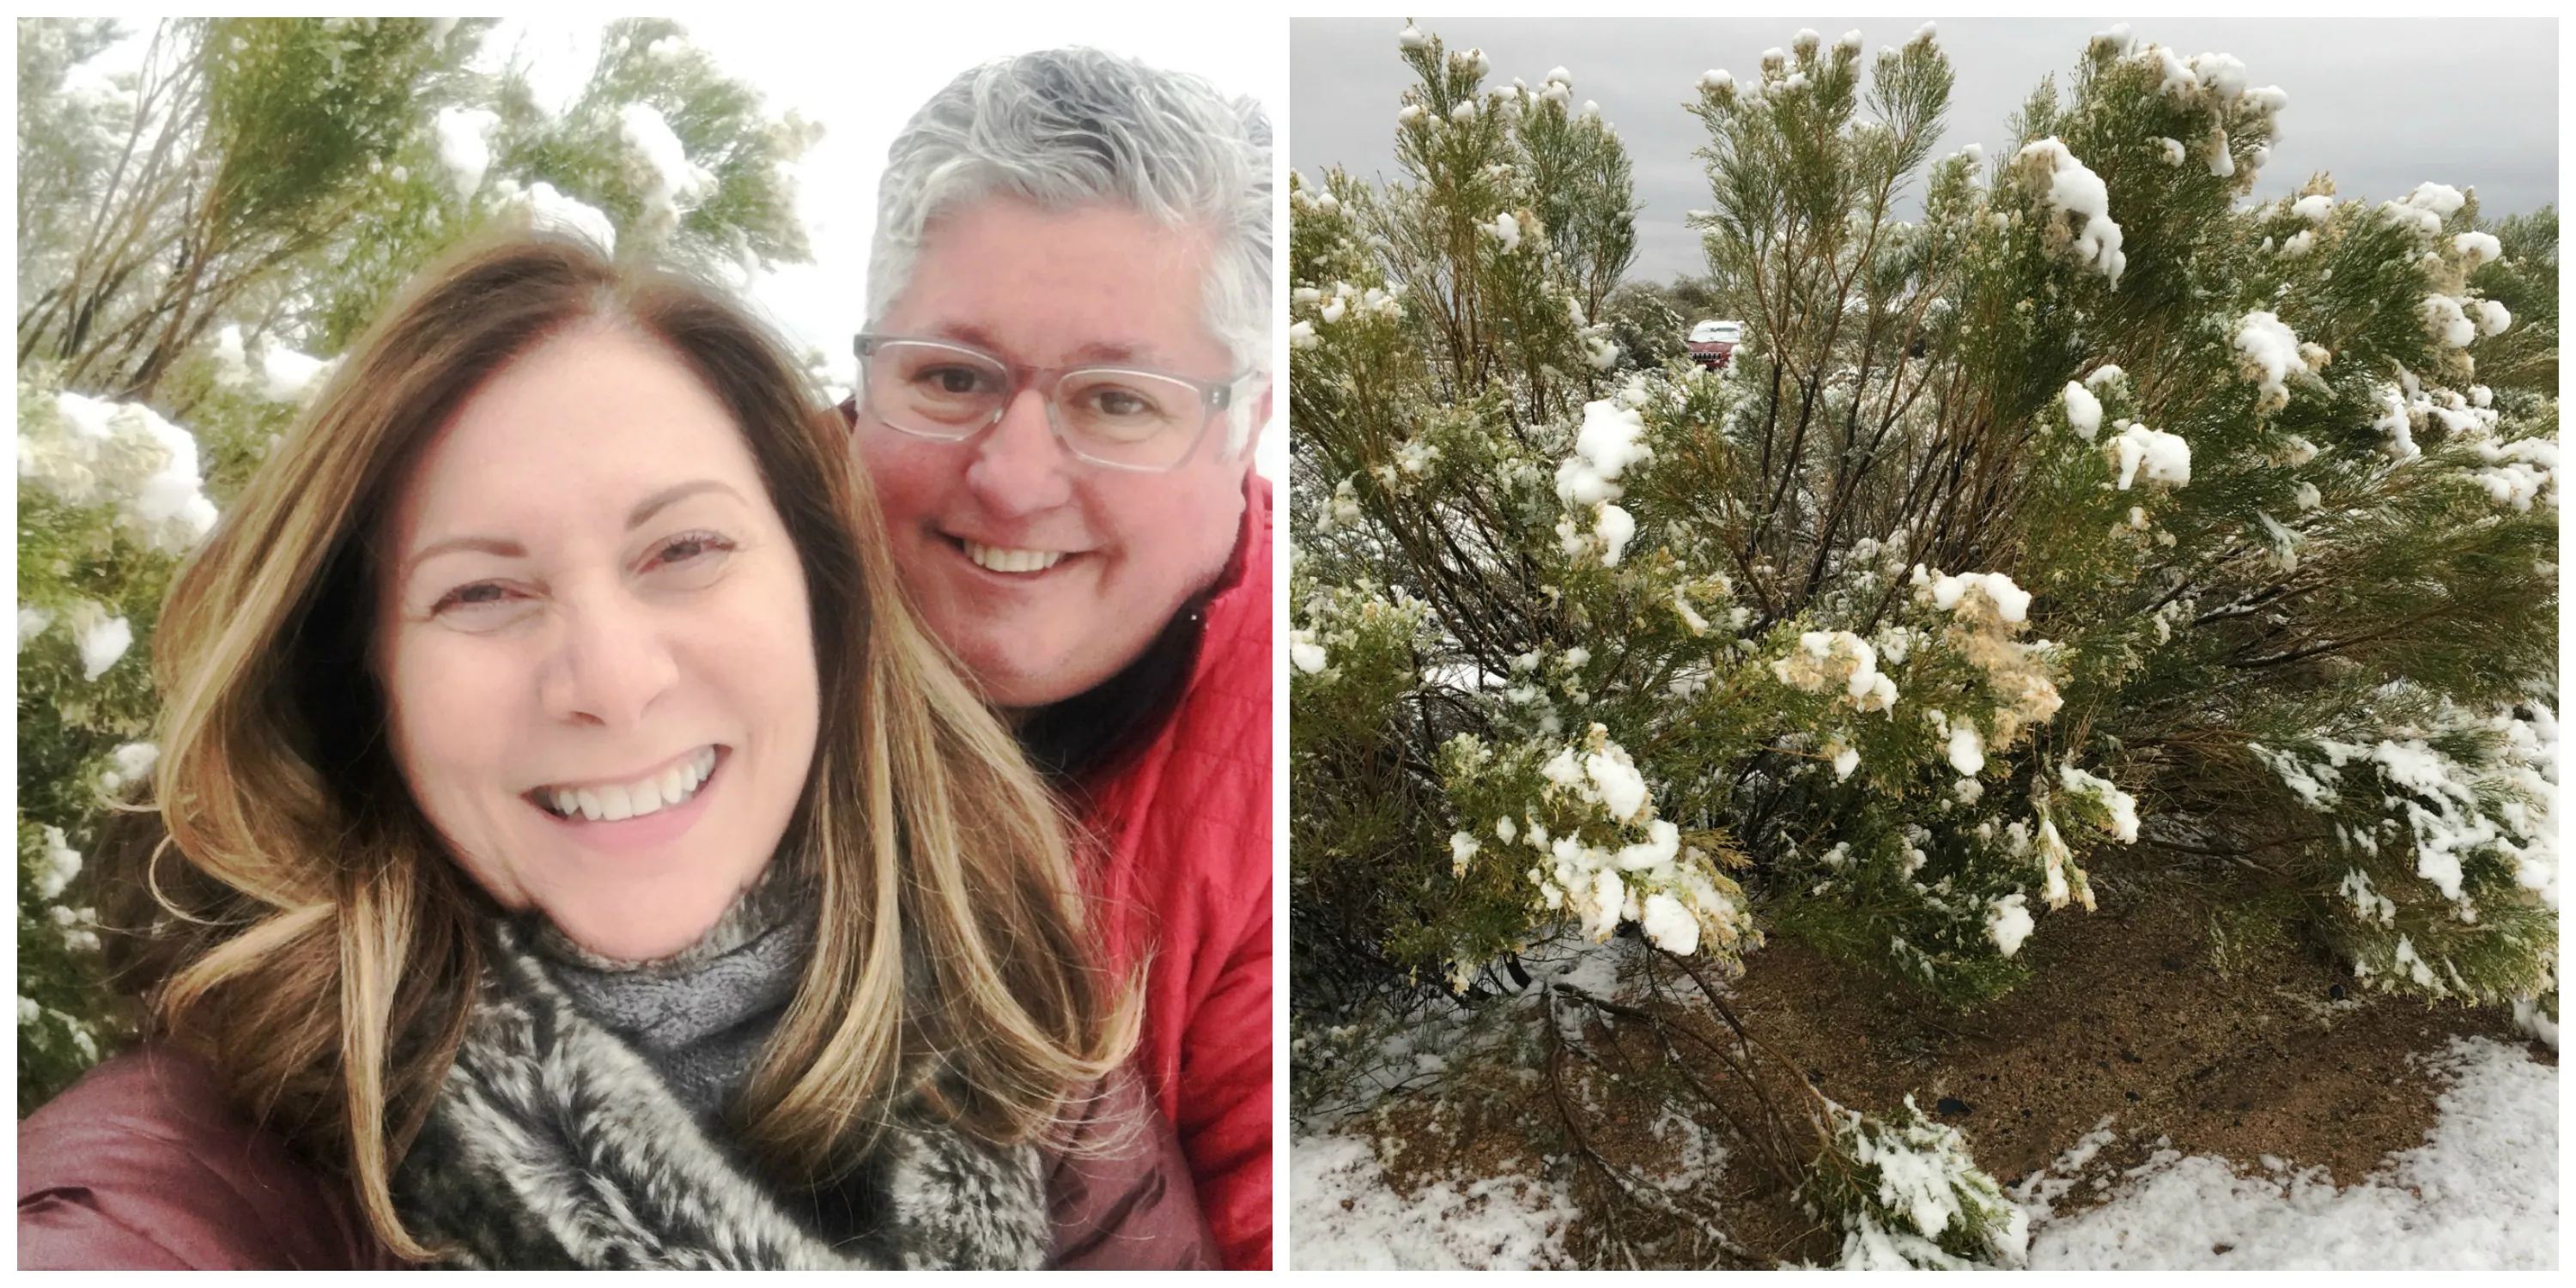 Fun in the snow in Arizona!